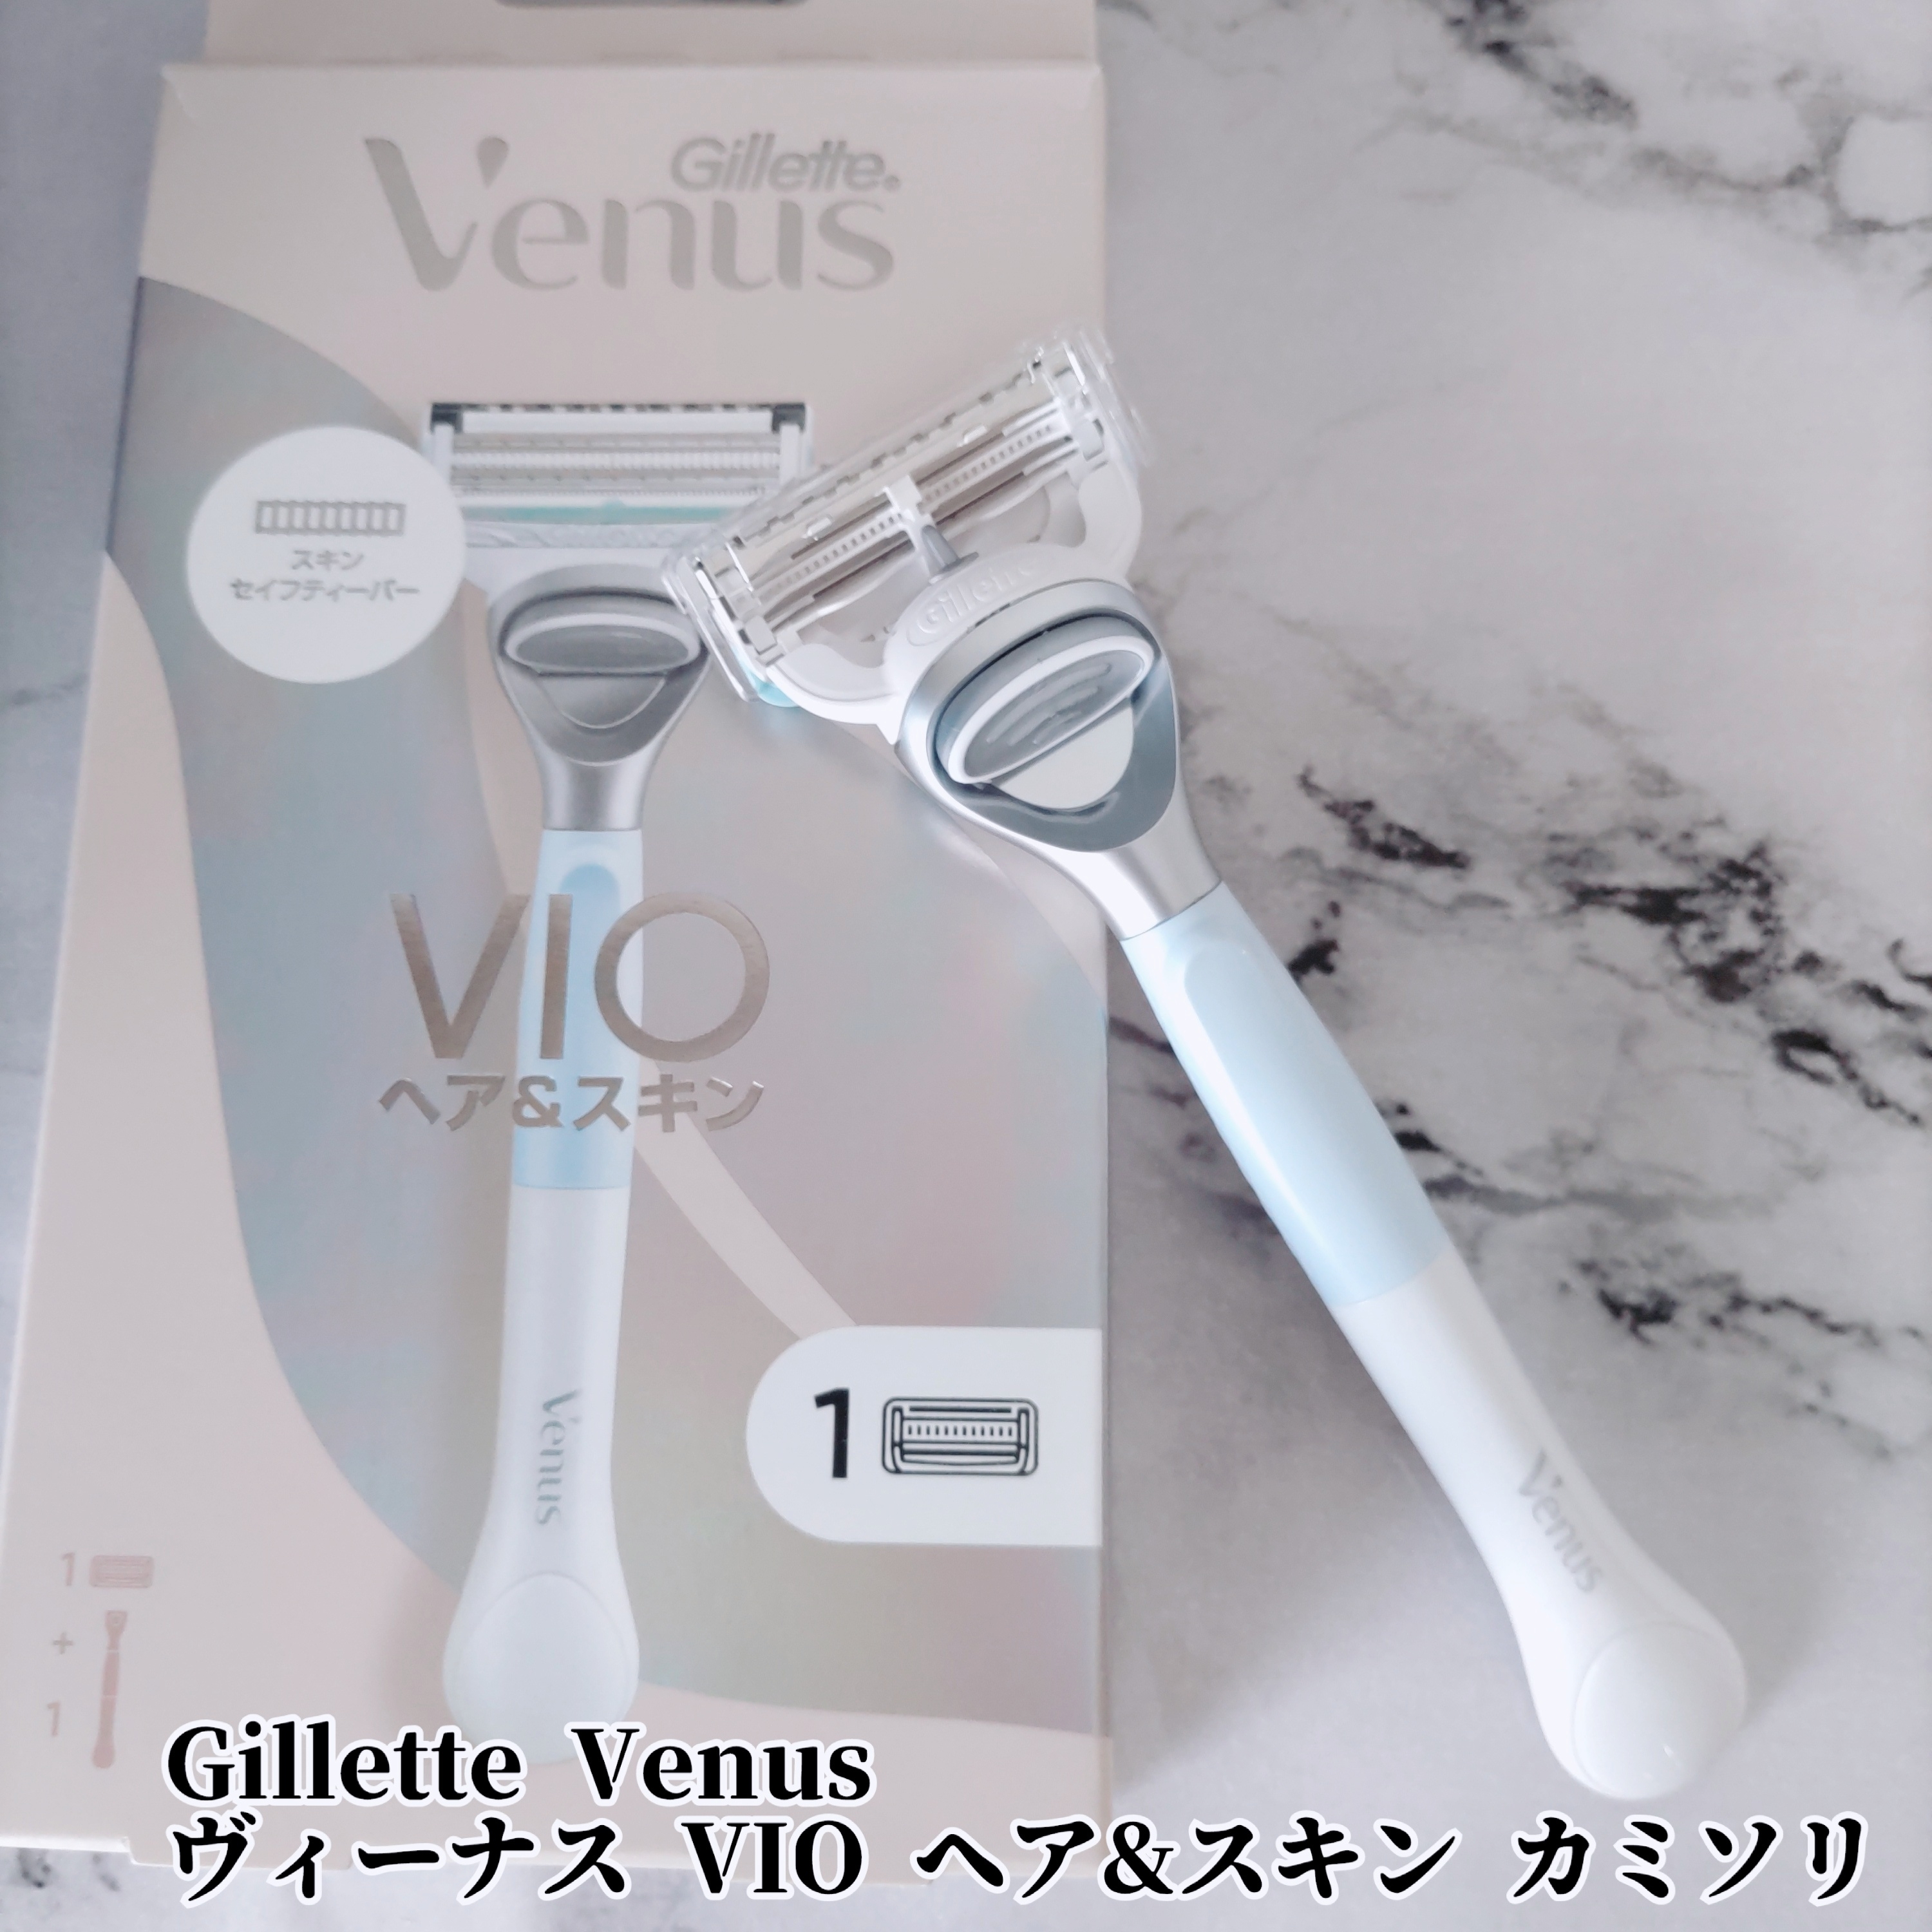 Gillette Venusヴィーナス VIO ヘア&スキン カミソリを使ったYuKaRi♡さんのクチコミ画像1